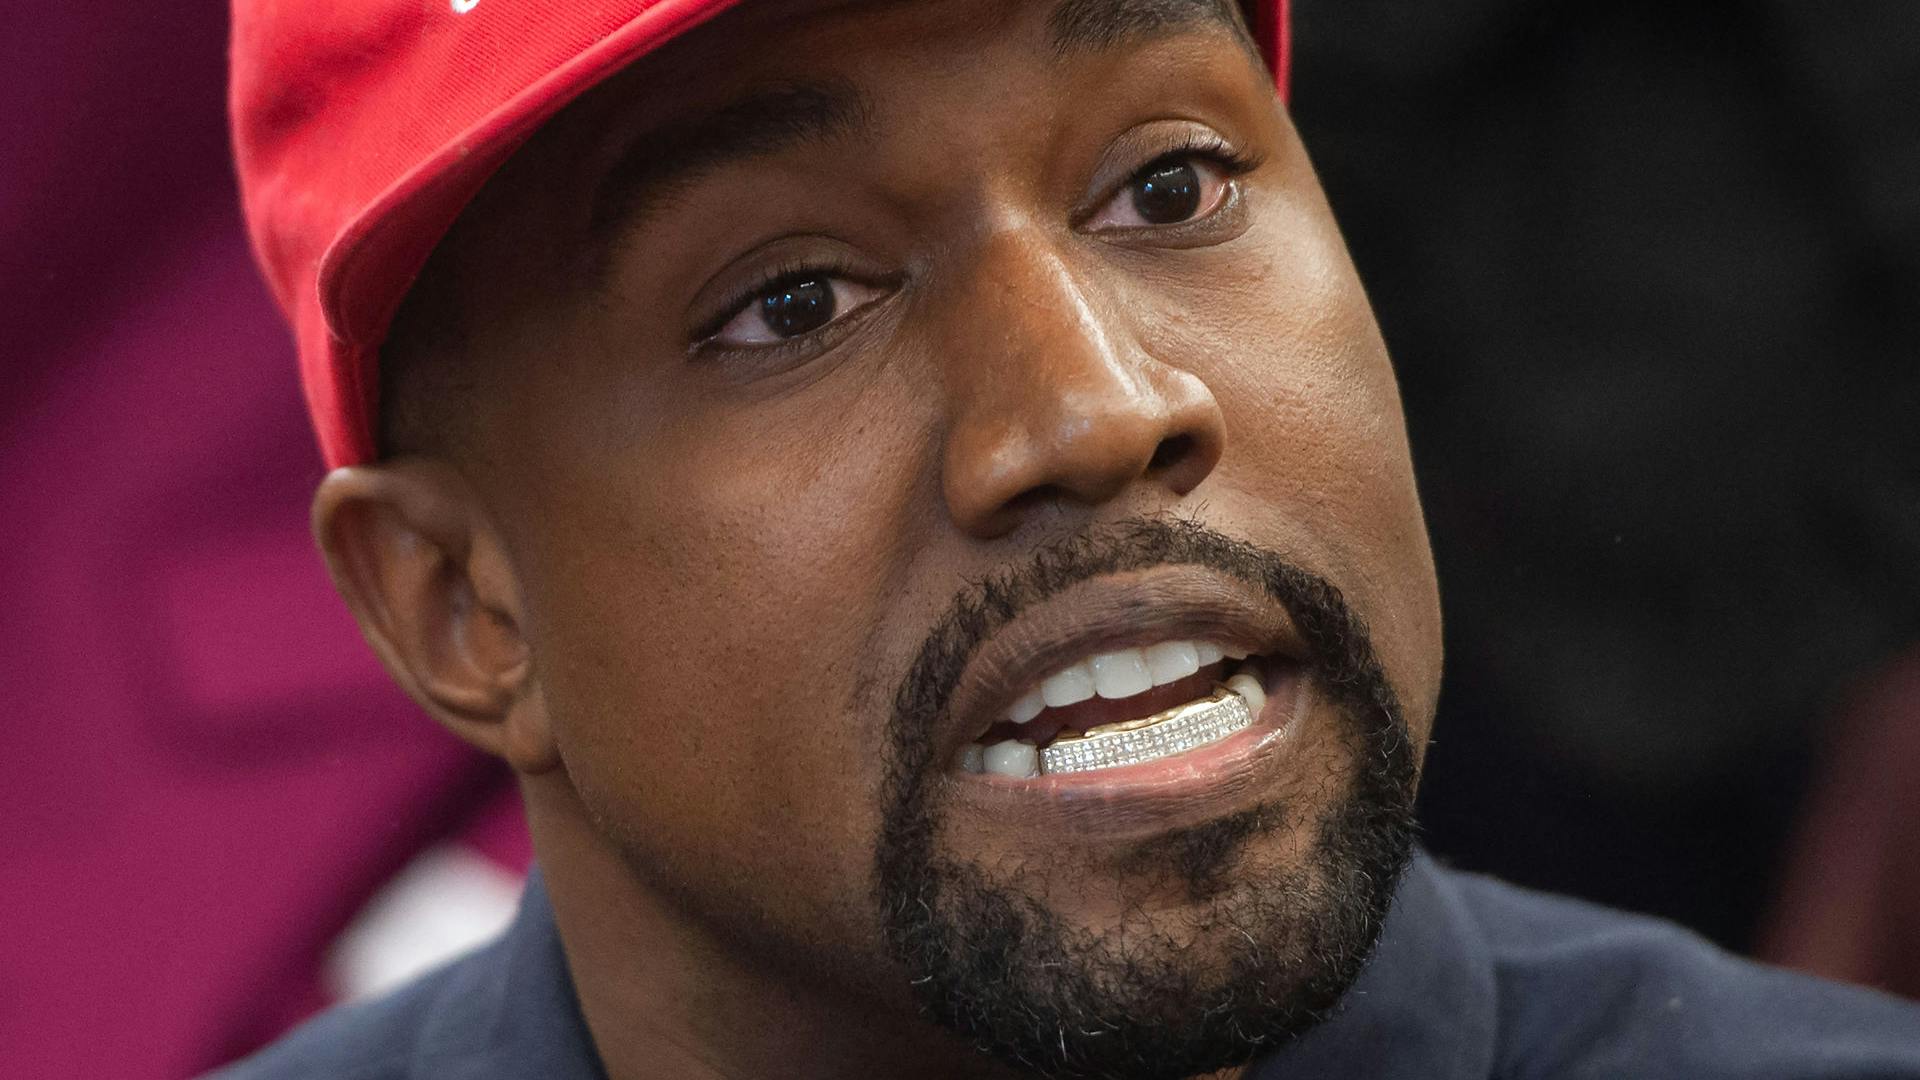 Ye, tidligere kendt som Kanye West, får sin Twitter-profil suspenderet, fordi han har brudt Twitters regler for tilskyndelse til vold.